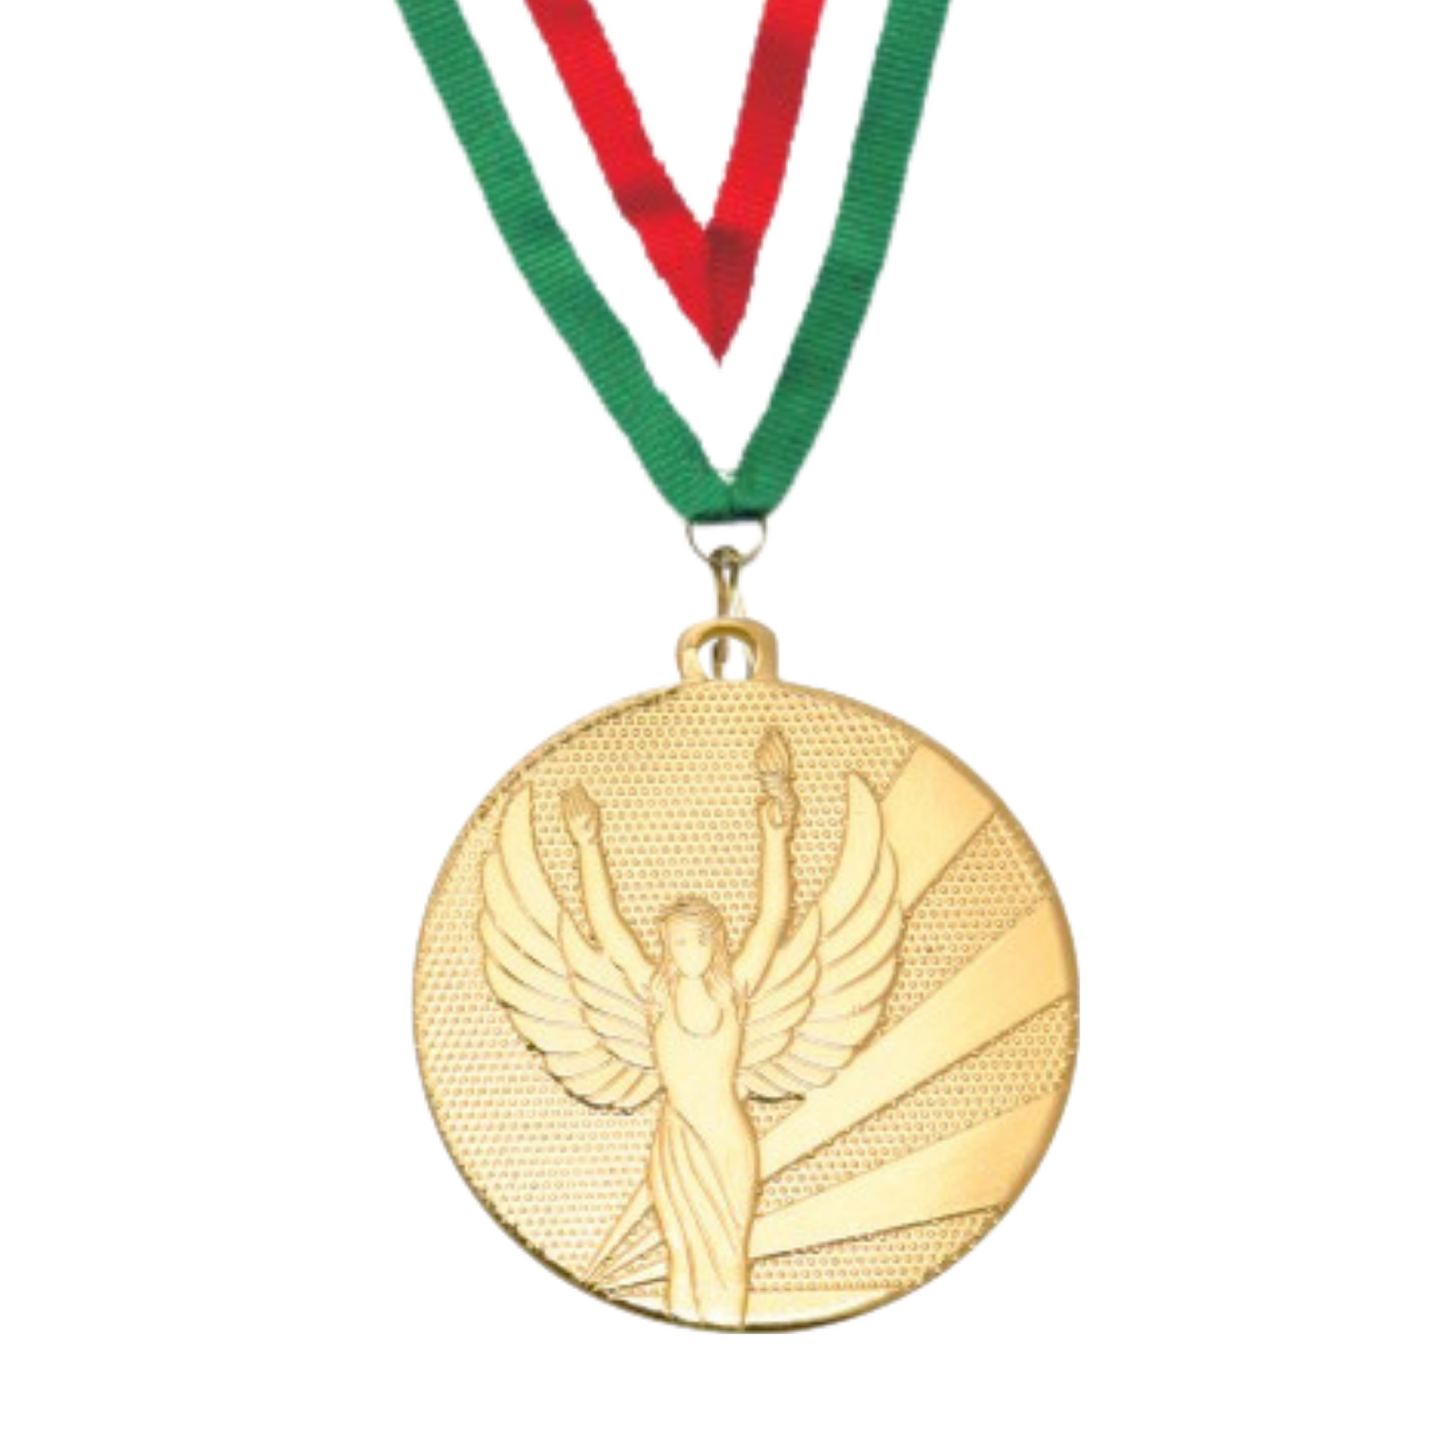 Medaglia personalizzata 50 mm oro| Cod. 23.009.23GQ